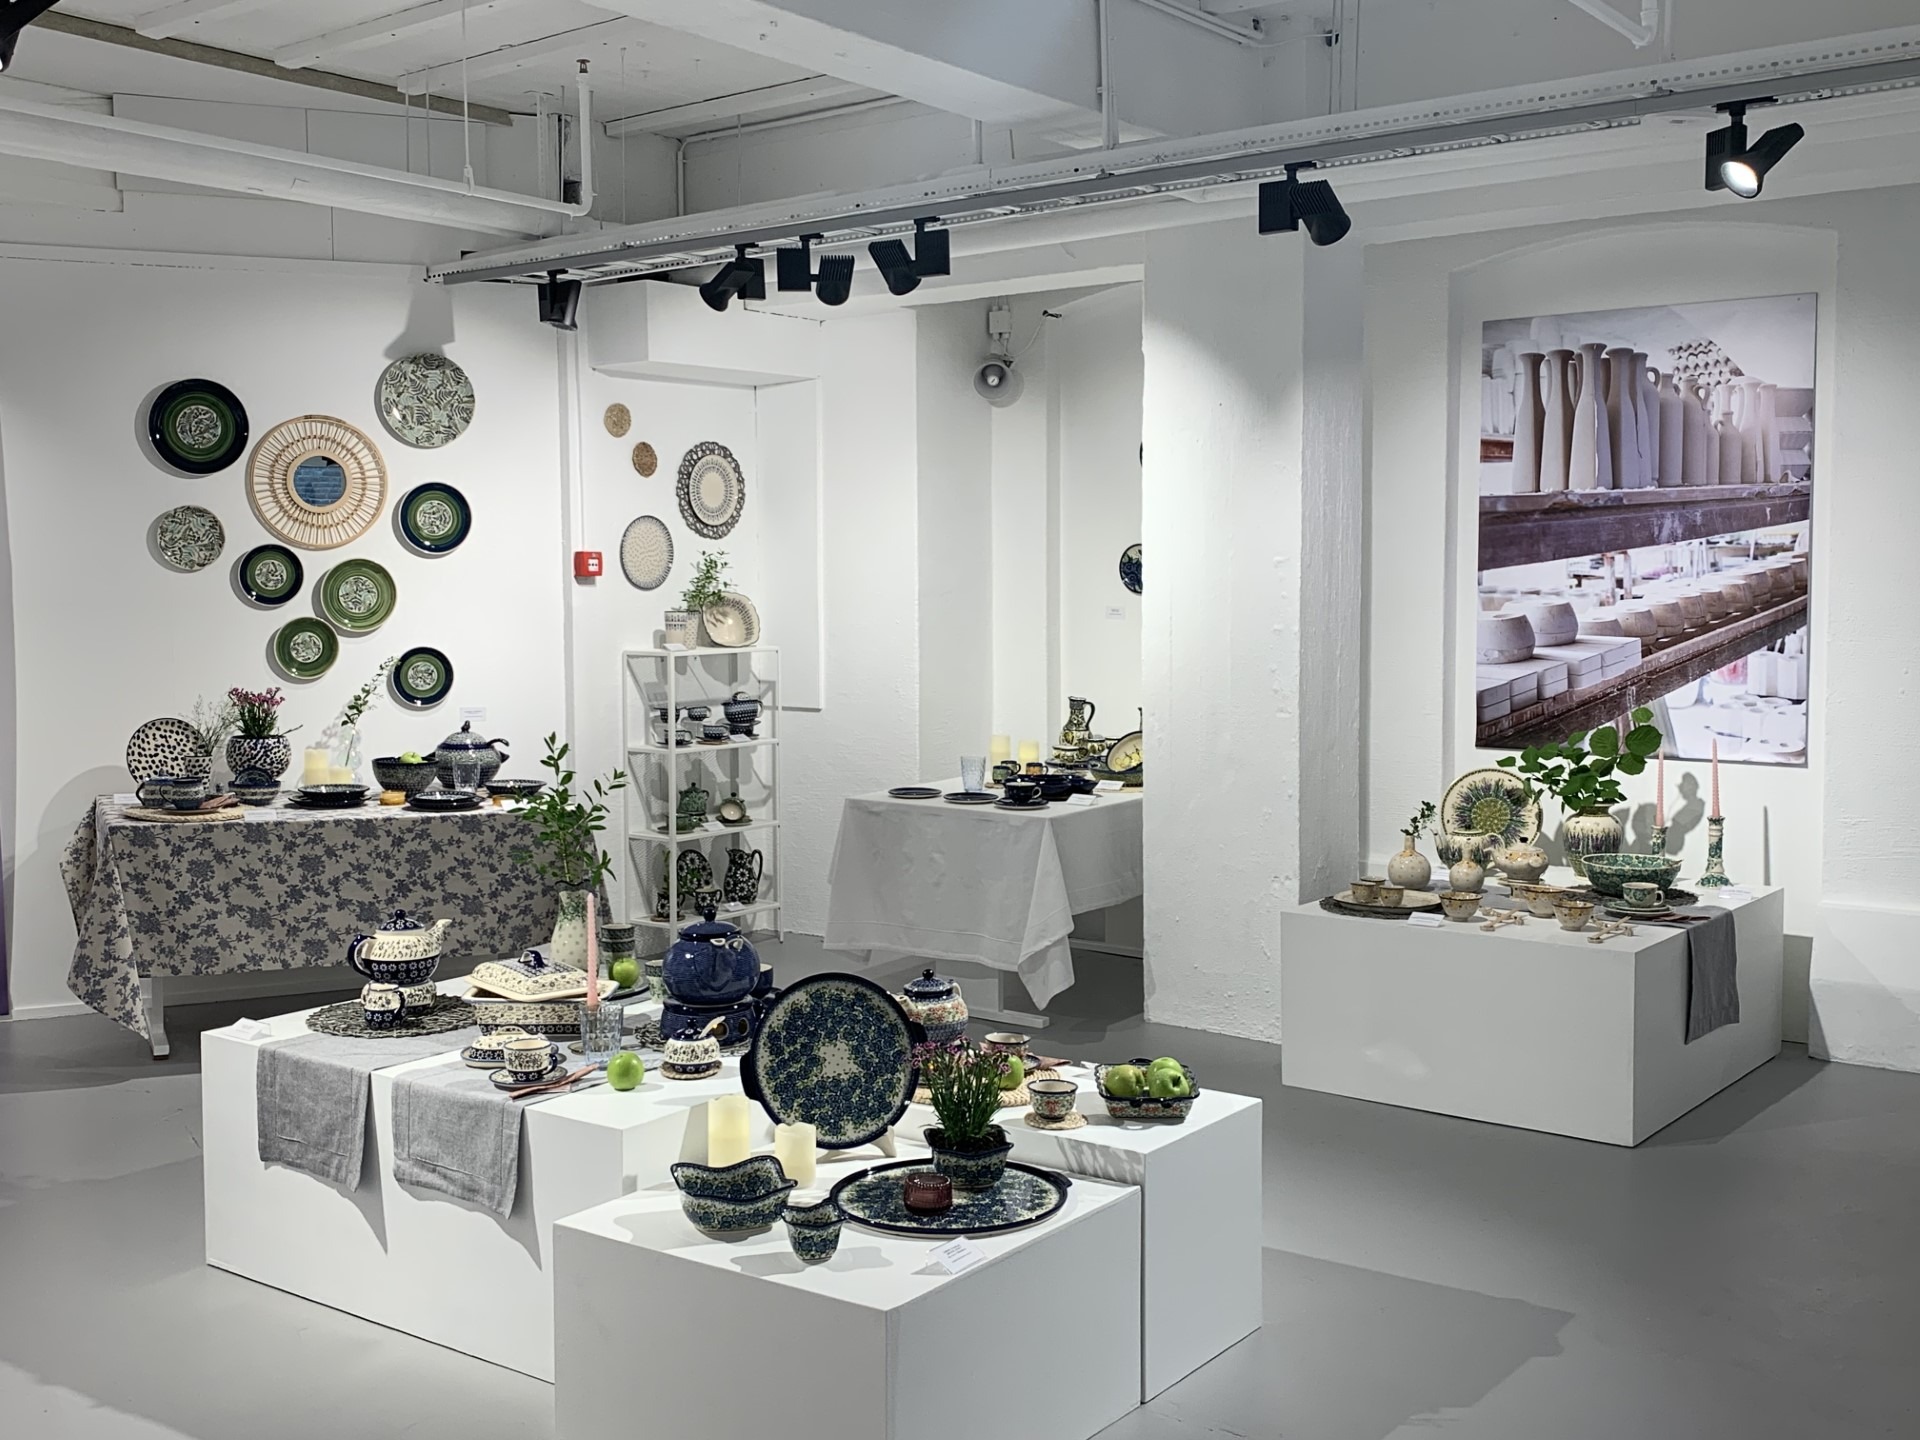 Et hvitt utstillingslokale hvor det er stilt ut fargerike keramikkgjenstander i blått, grønt og hvitt.